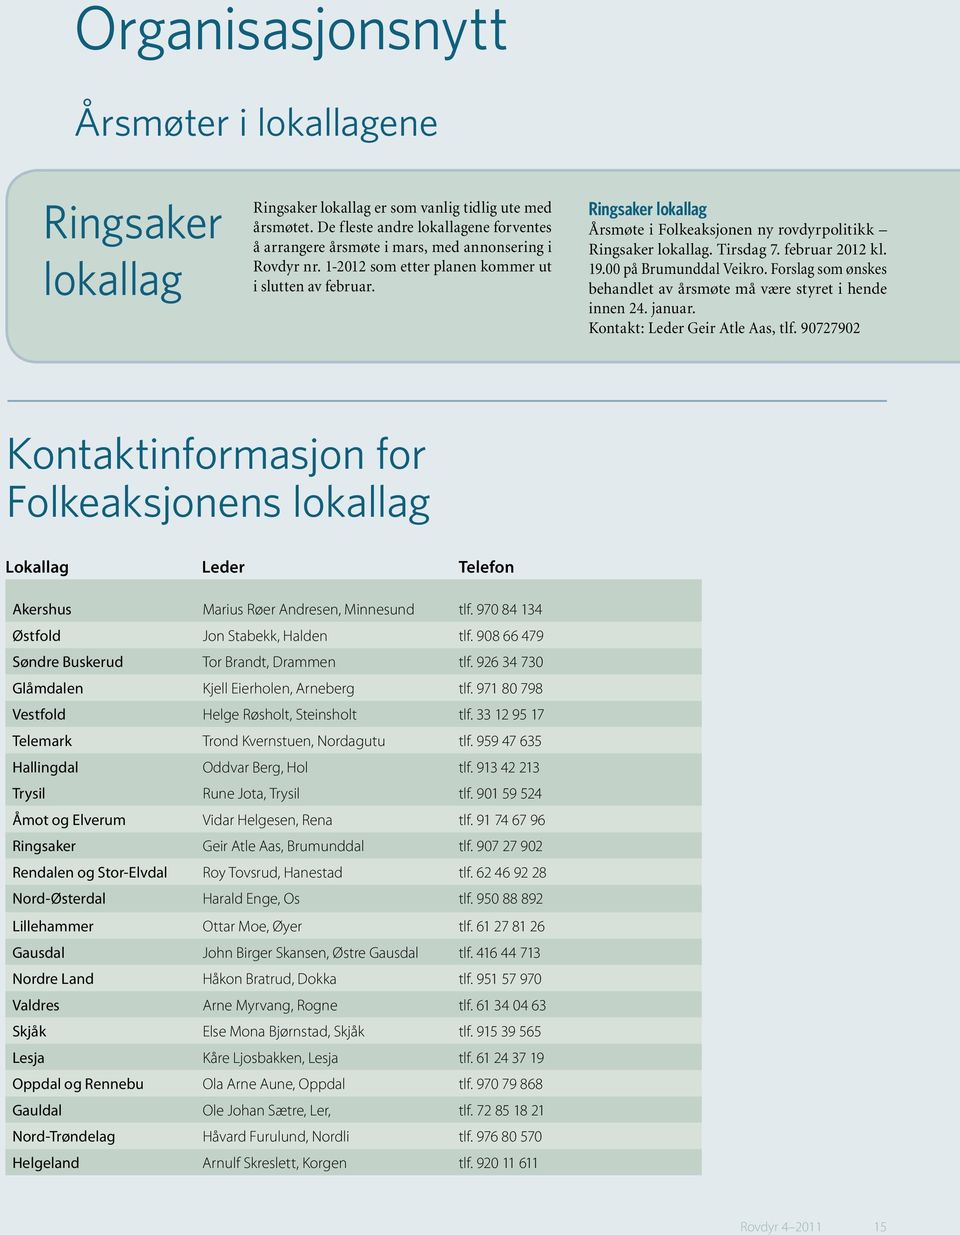 Ringsaker lokallag Årsmøte i Folkeaksjonen ny rovdyrpolitikk Ringsaker lokallag. Tirsdag 7. februar 2012 kl. 19.00 på Brumunddal Veikro.